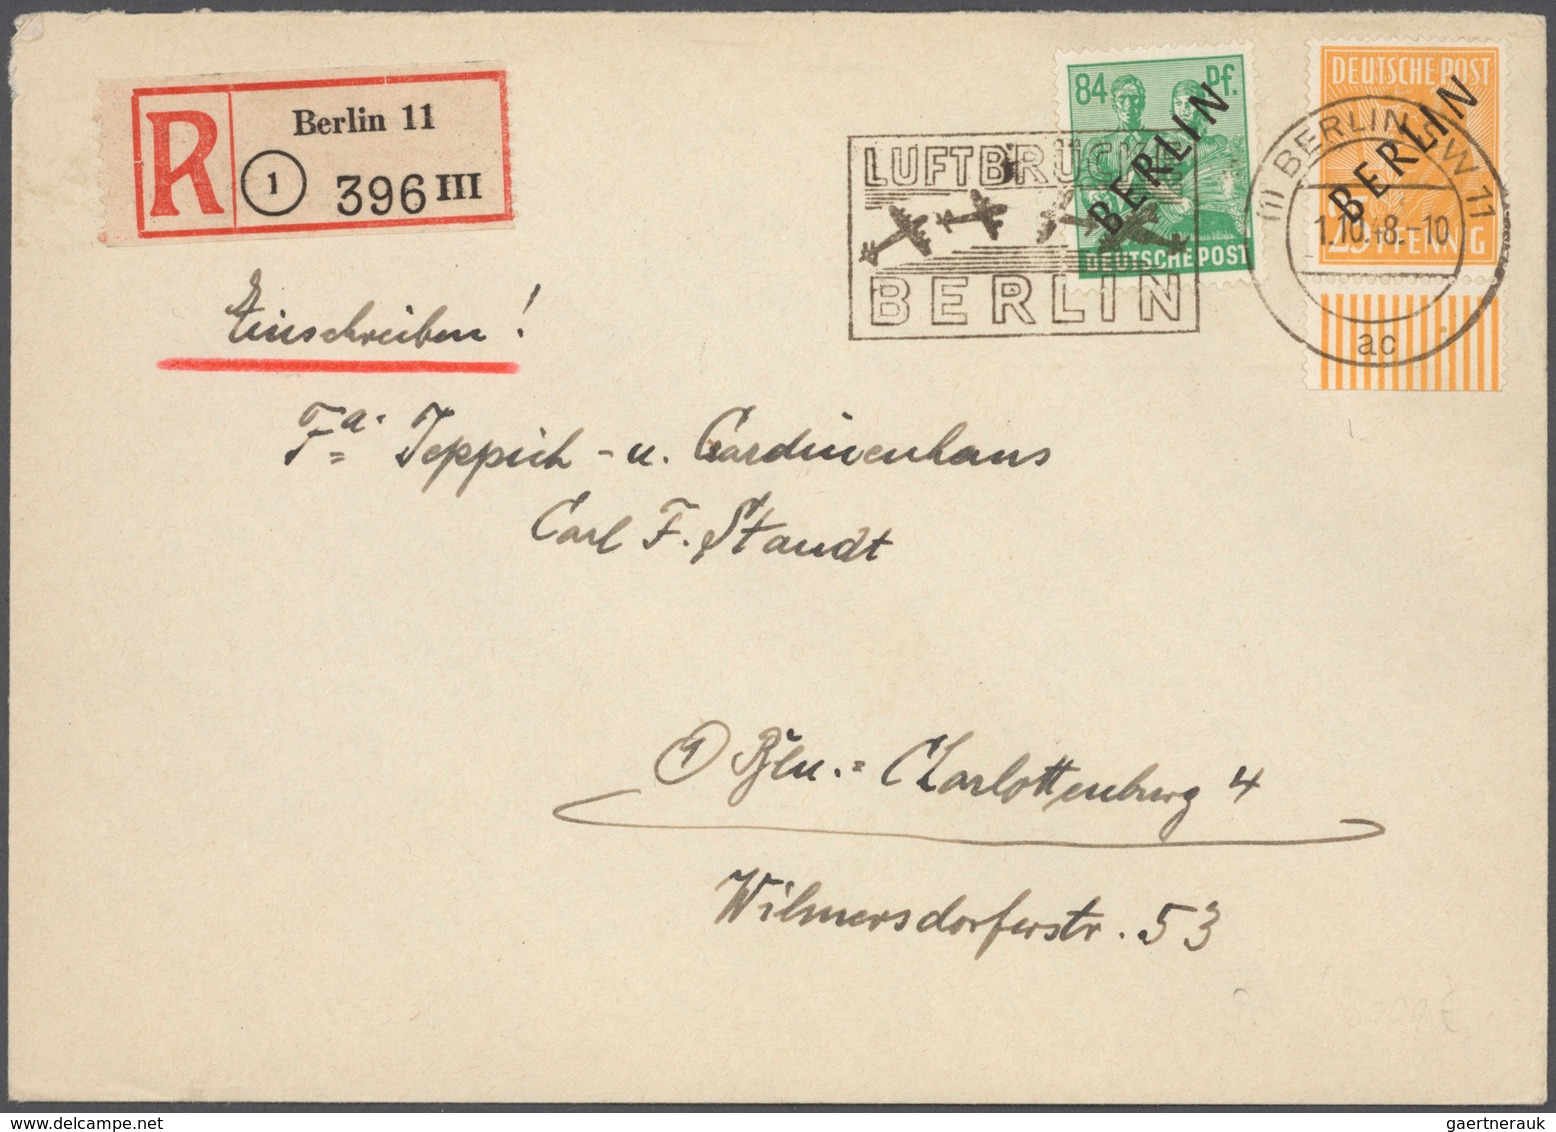 Berlin: 1948, kpl. Satz Schwarzaufdrucke auf insges. 9 Briefen, dabei Markwerte je einzel auf großf.